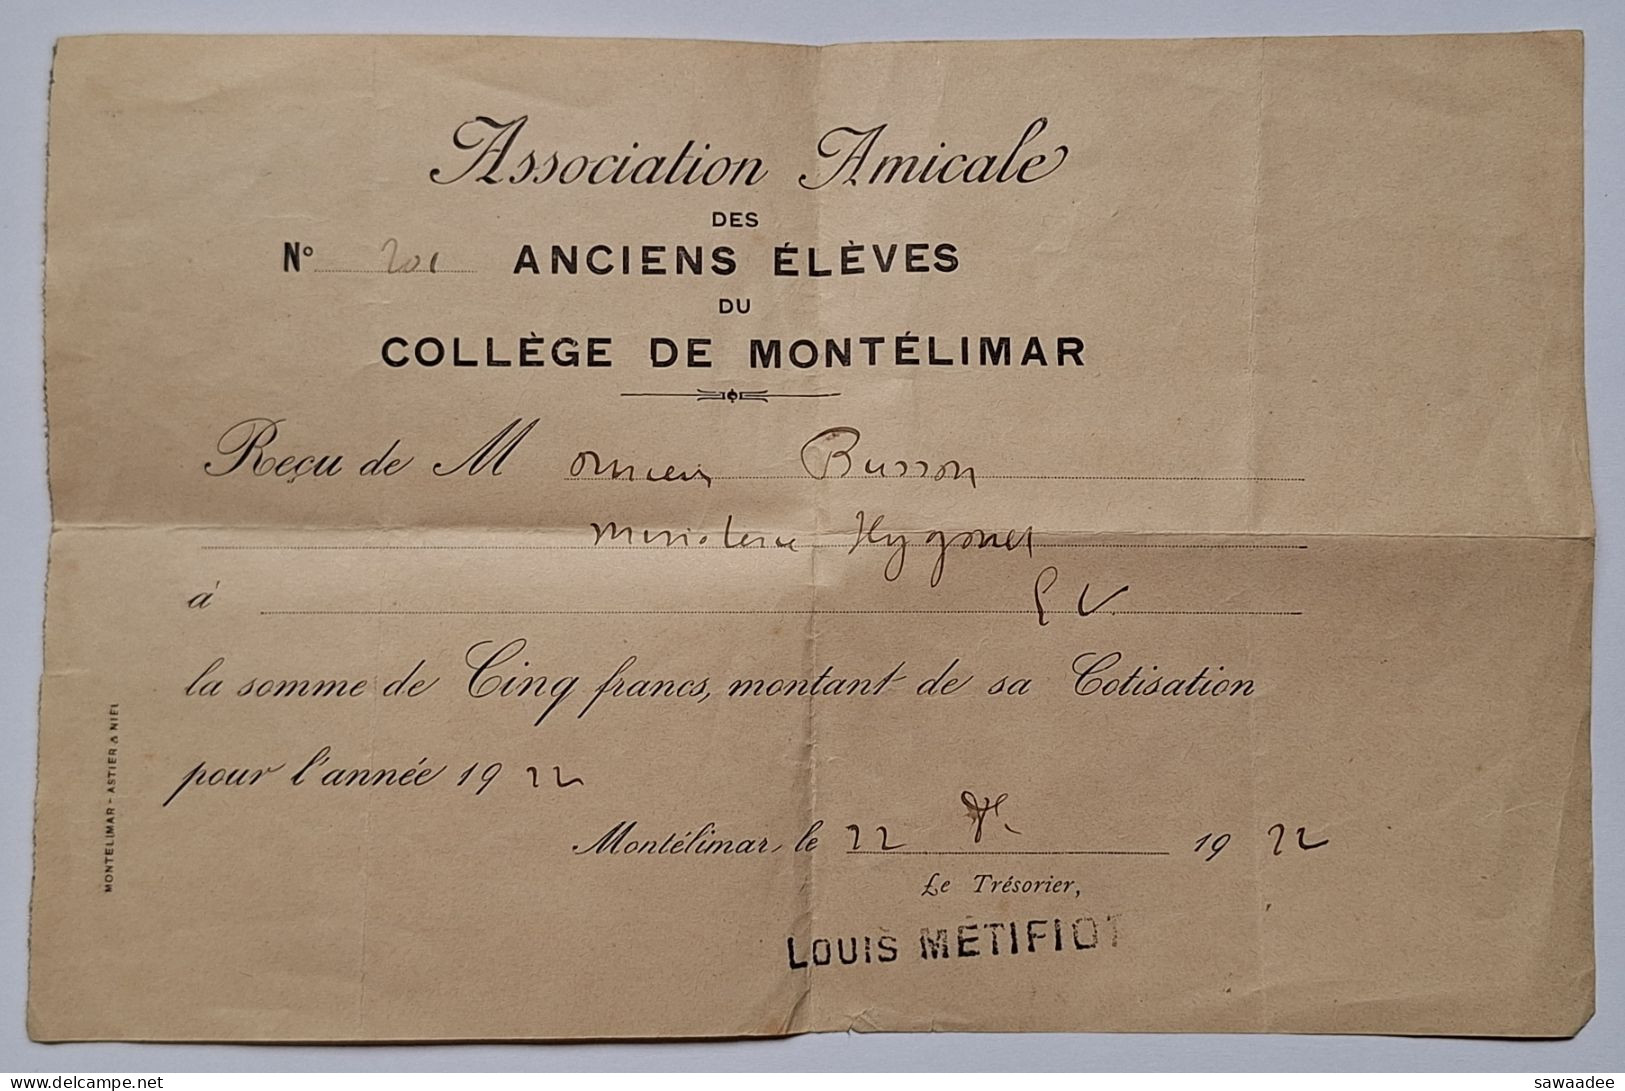 DOCUMENT - ASSOCIATION AMICALE DES ANCIENS ELEVES DU COLLEGE DE MONTELIMAR - COTISATION 1924 - Diploma & School Reports